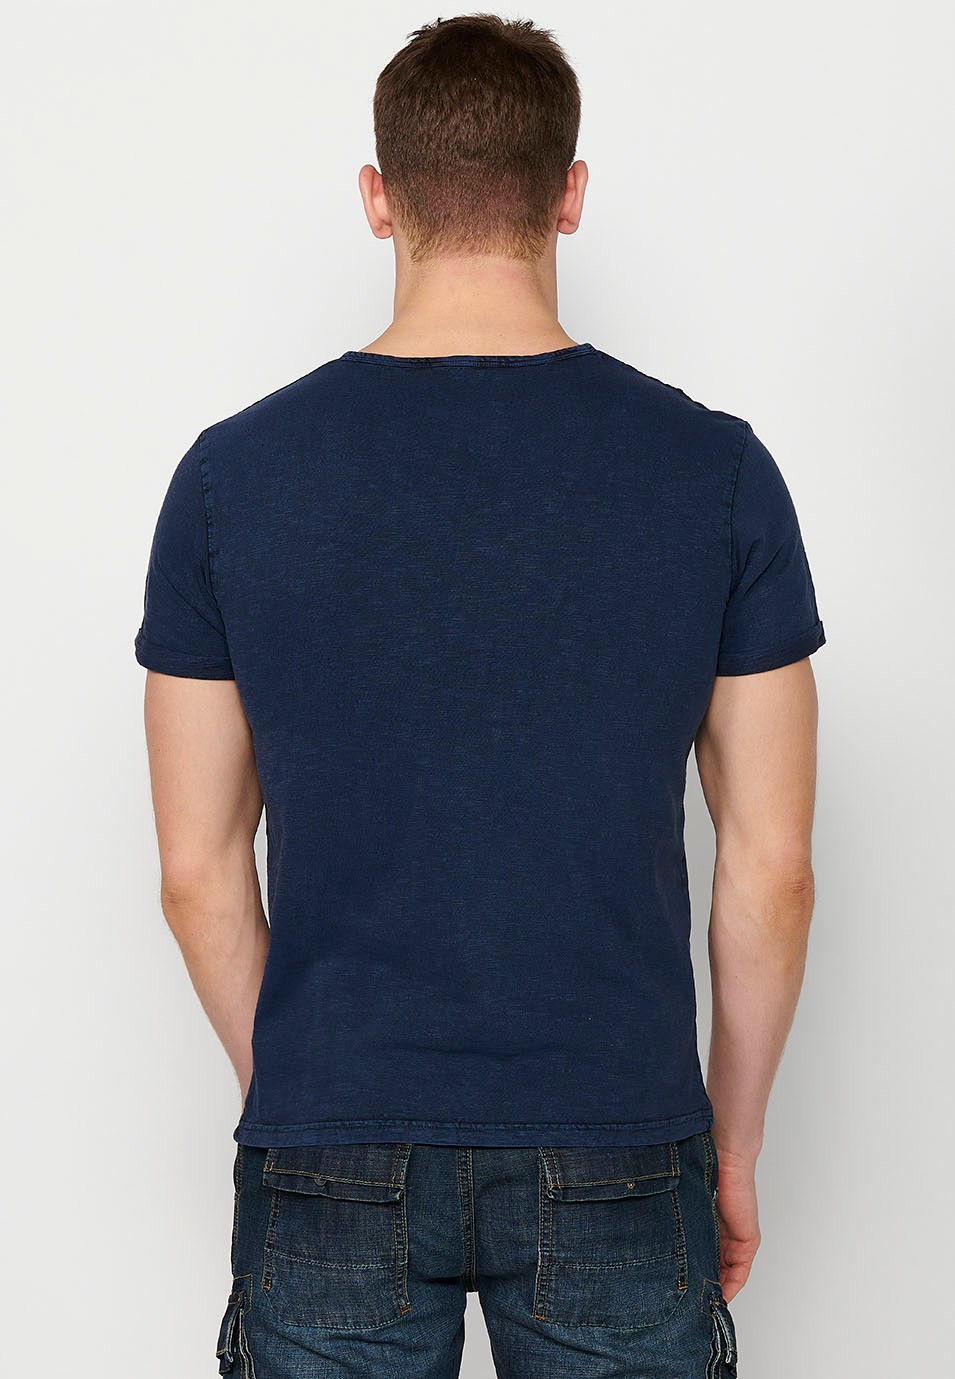 Samarreta de màniga curta, coll rodó amb obertura, color blau per a home